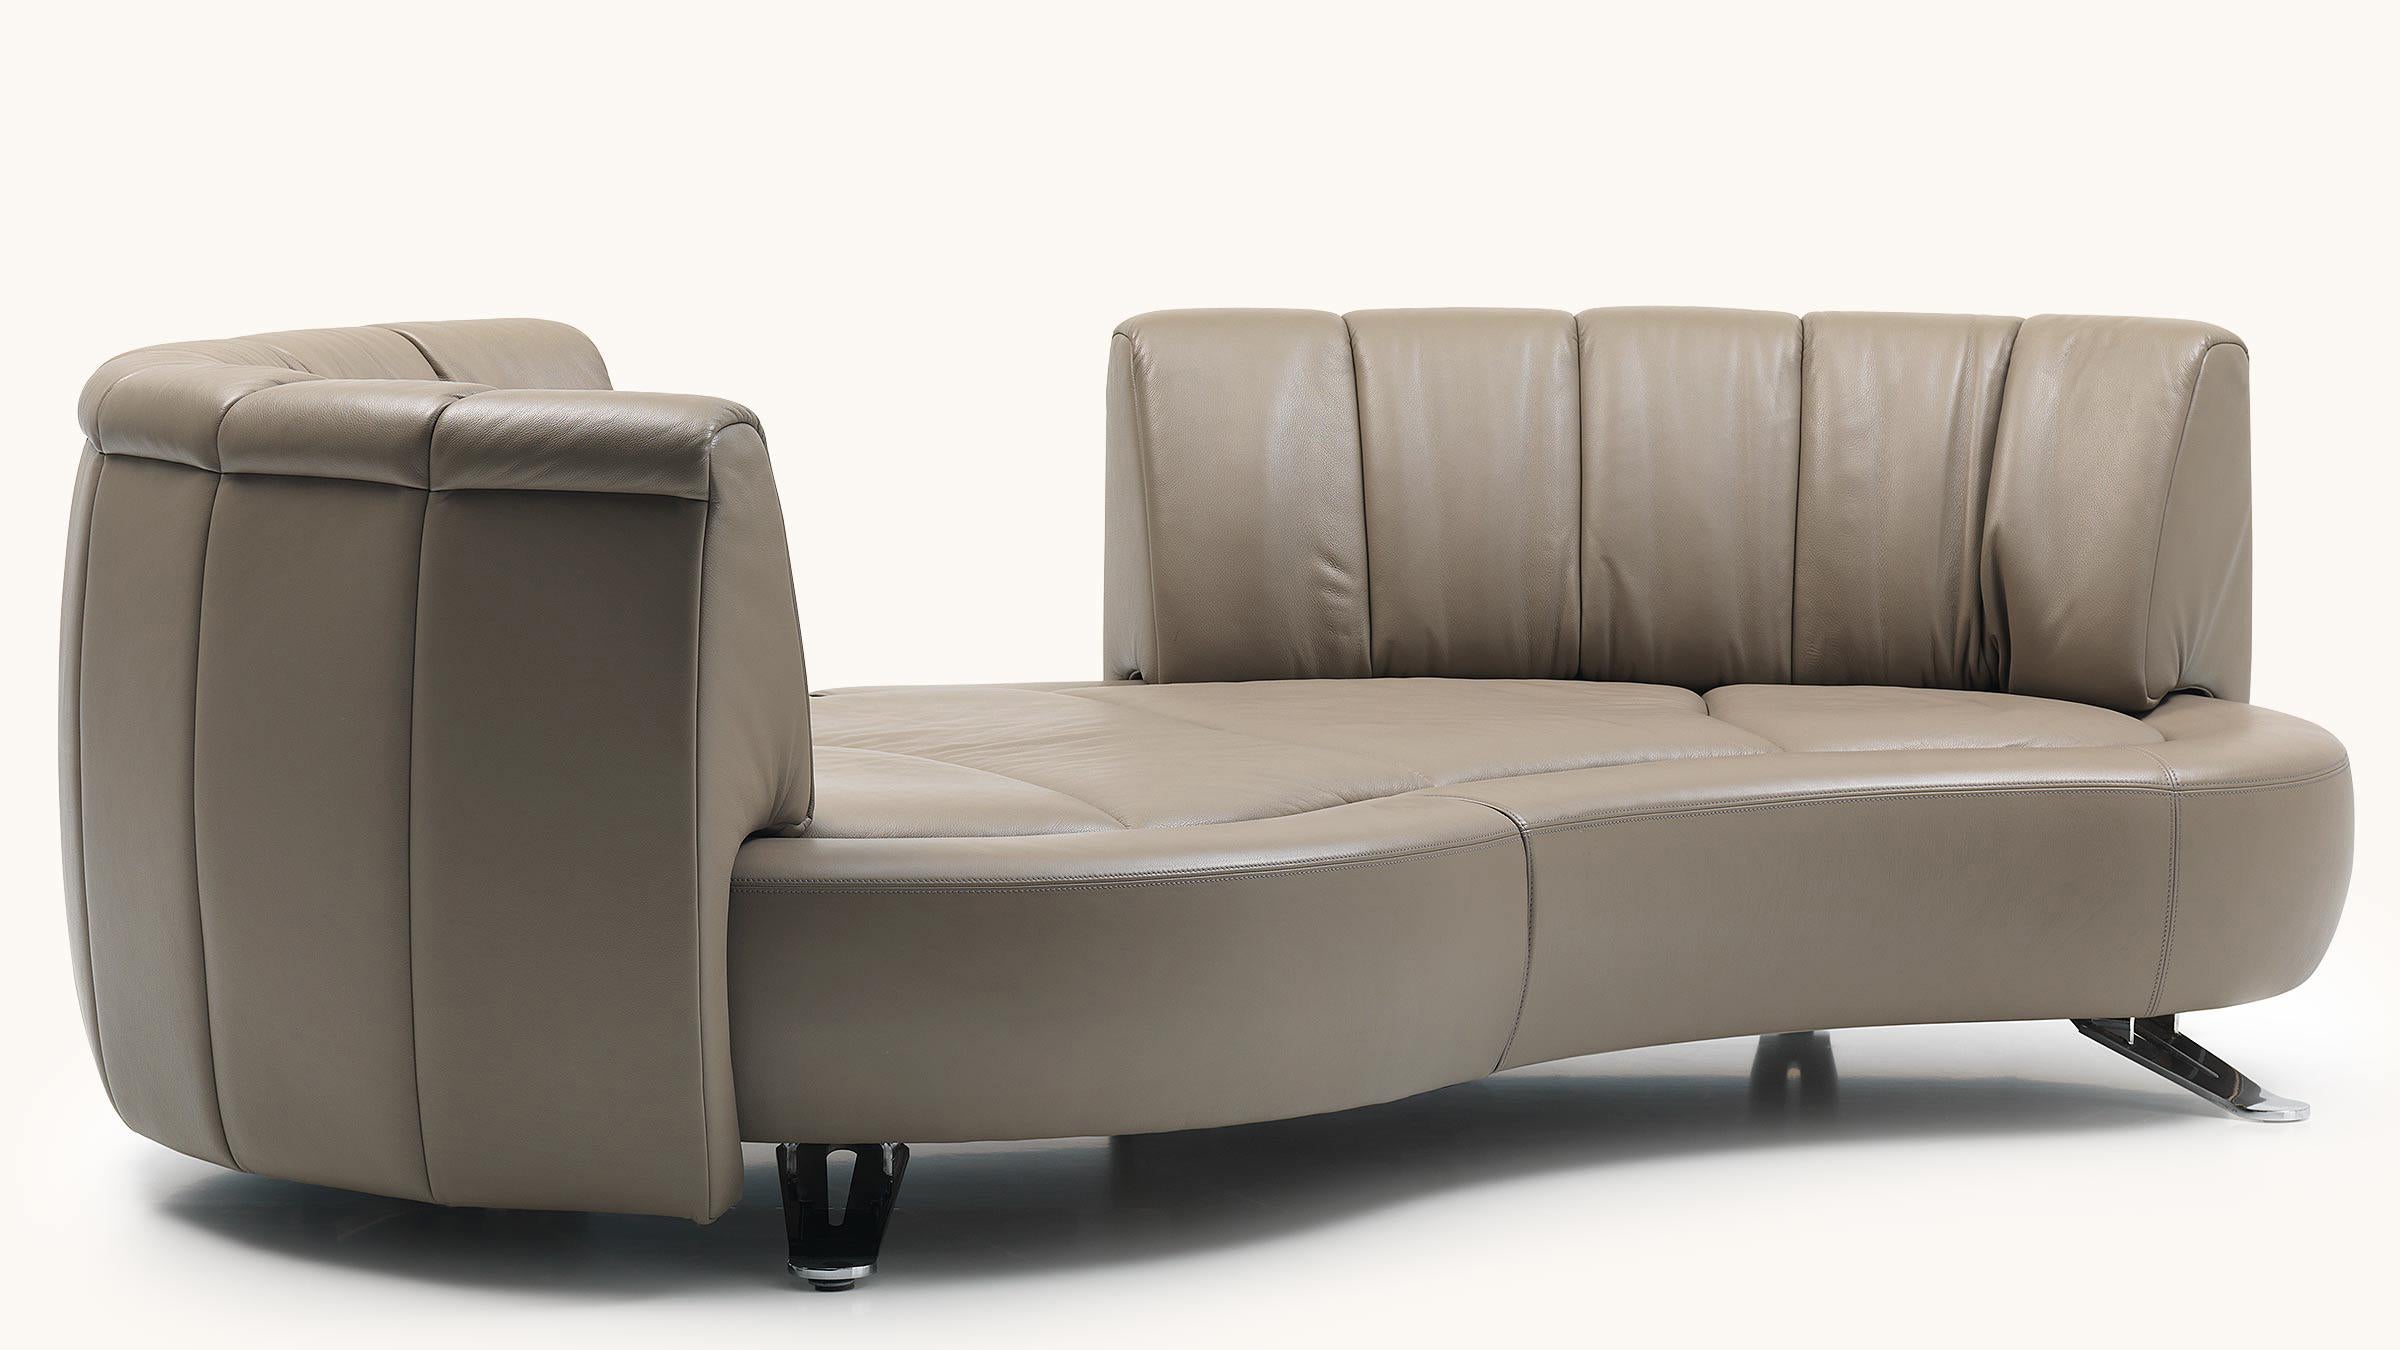 Der revolutionäre Rückenschiebemechanismus DS-164 lässt sich mit einem Handgriff von einem offenen Sofa in eine elegante Chaiselongue verwandeln, während die Rückenlehne stilvoll um 360° gedreht werden kann. Die modulare, organisch geschwungene